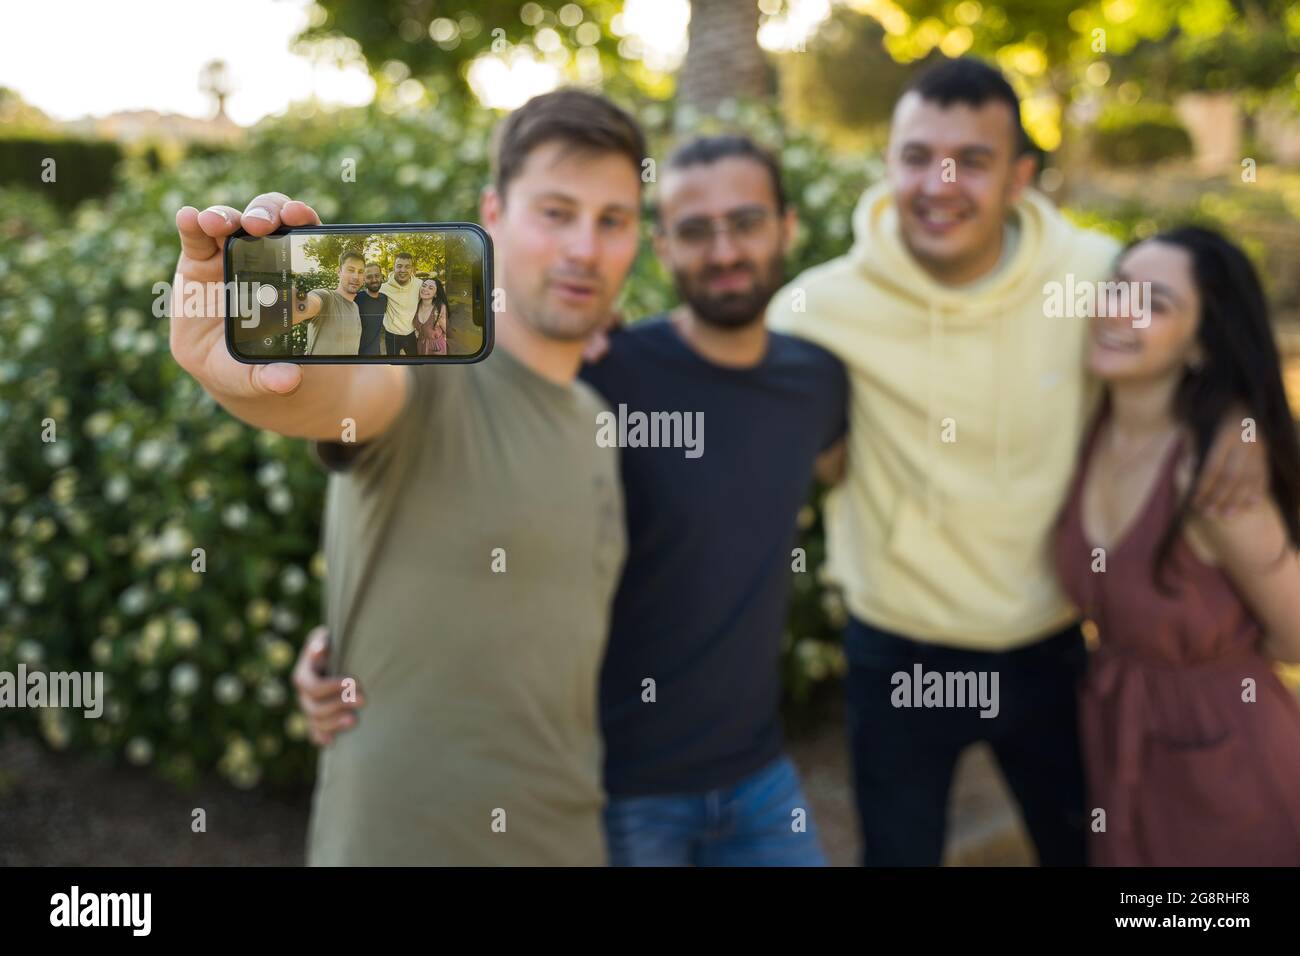 Amici che prendono un selfie insieme nel parco. Caucasici in abiti colorati. Sono felici di scattare una foto. L'attenzione è rivolta al telefono cellulare. Javea, Foto Stock